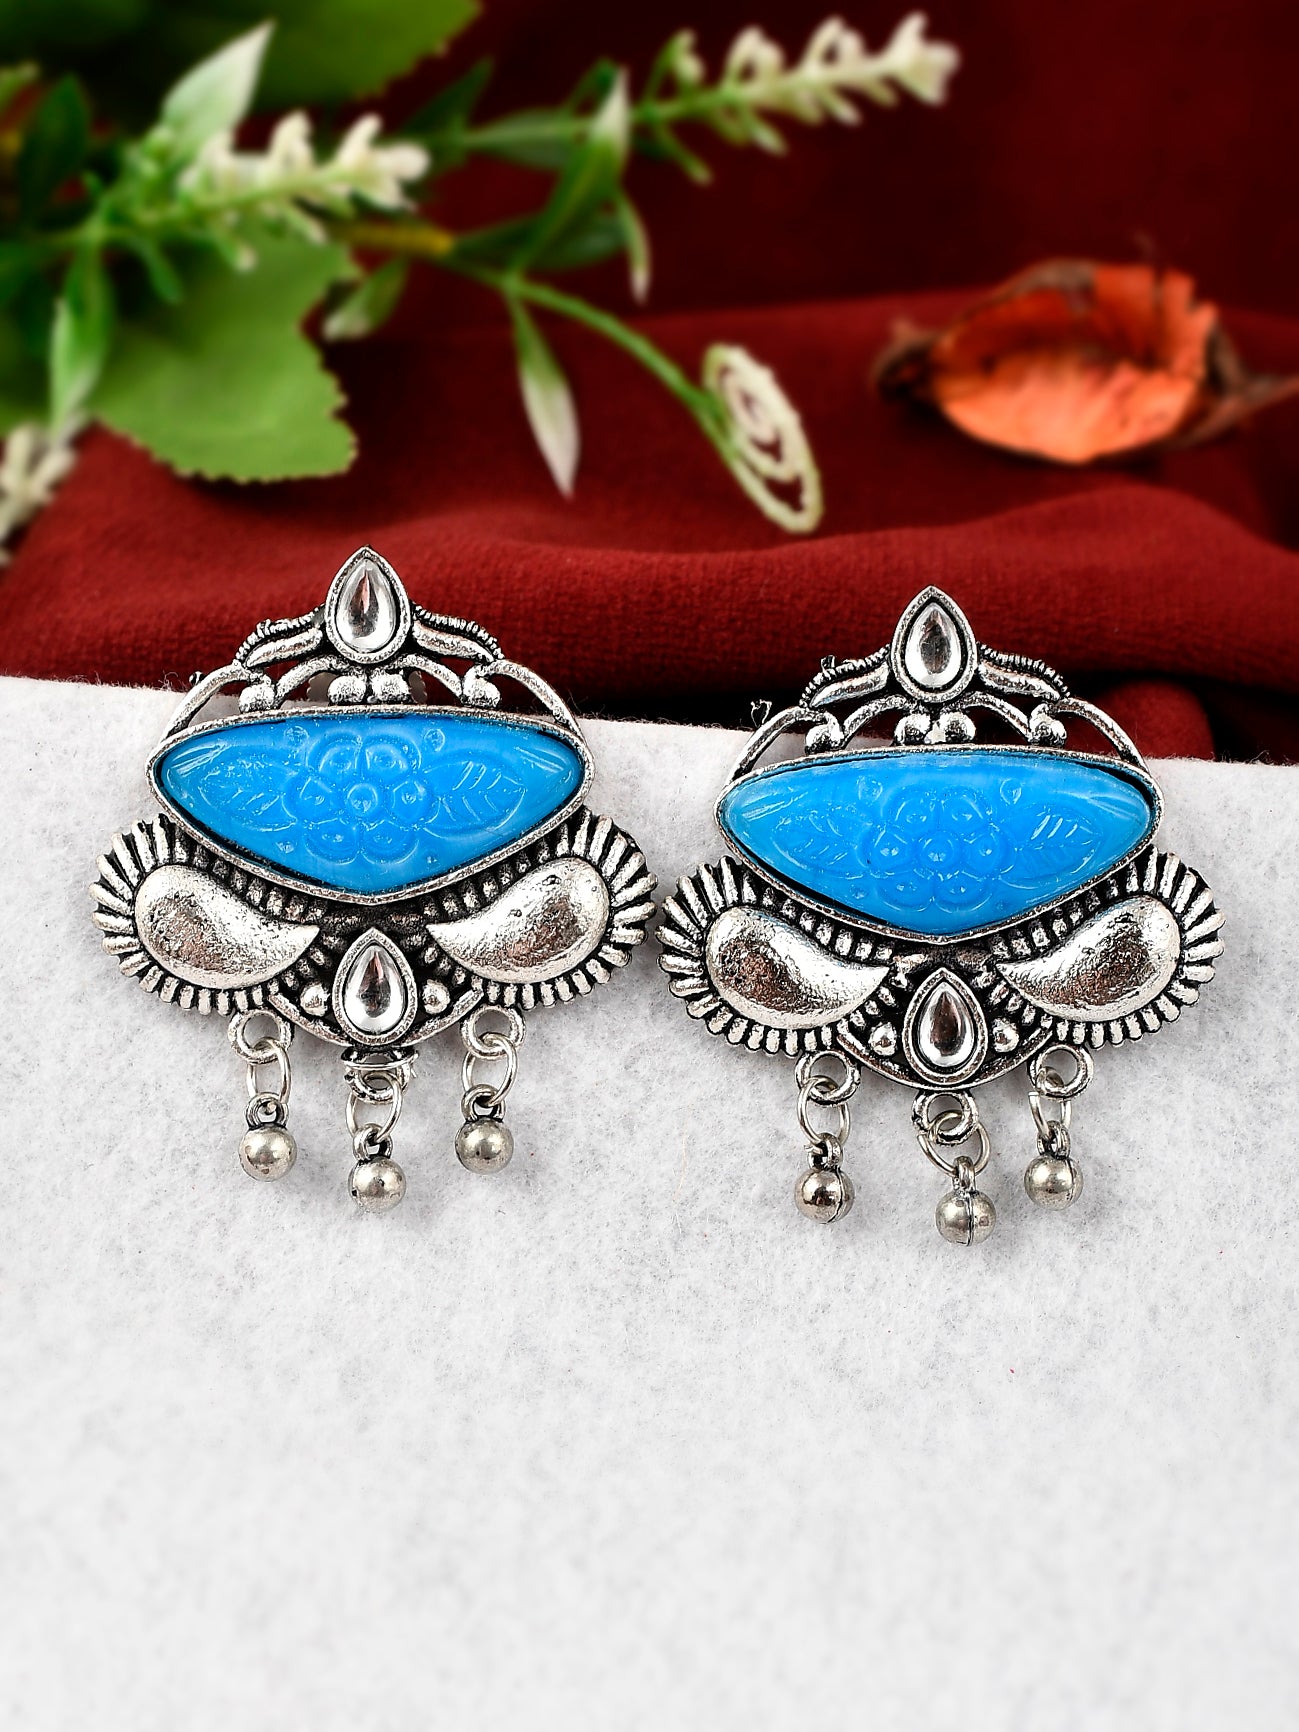 Buy silver earrings by mohabygeetanjali on DeviantArt